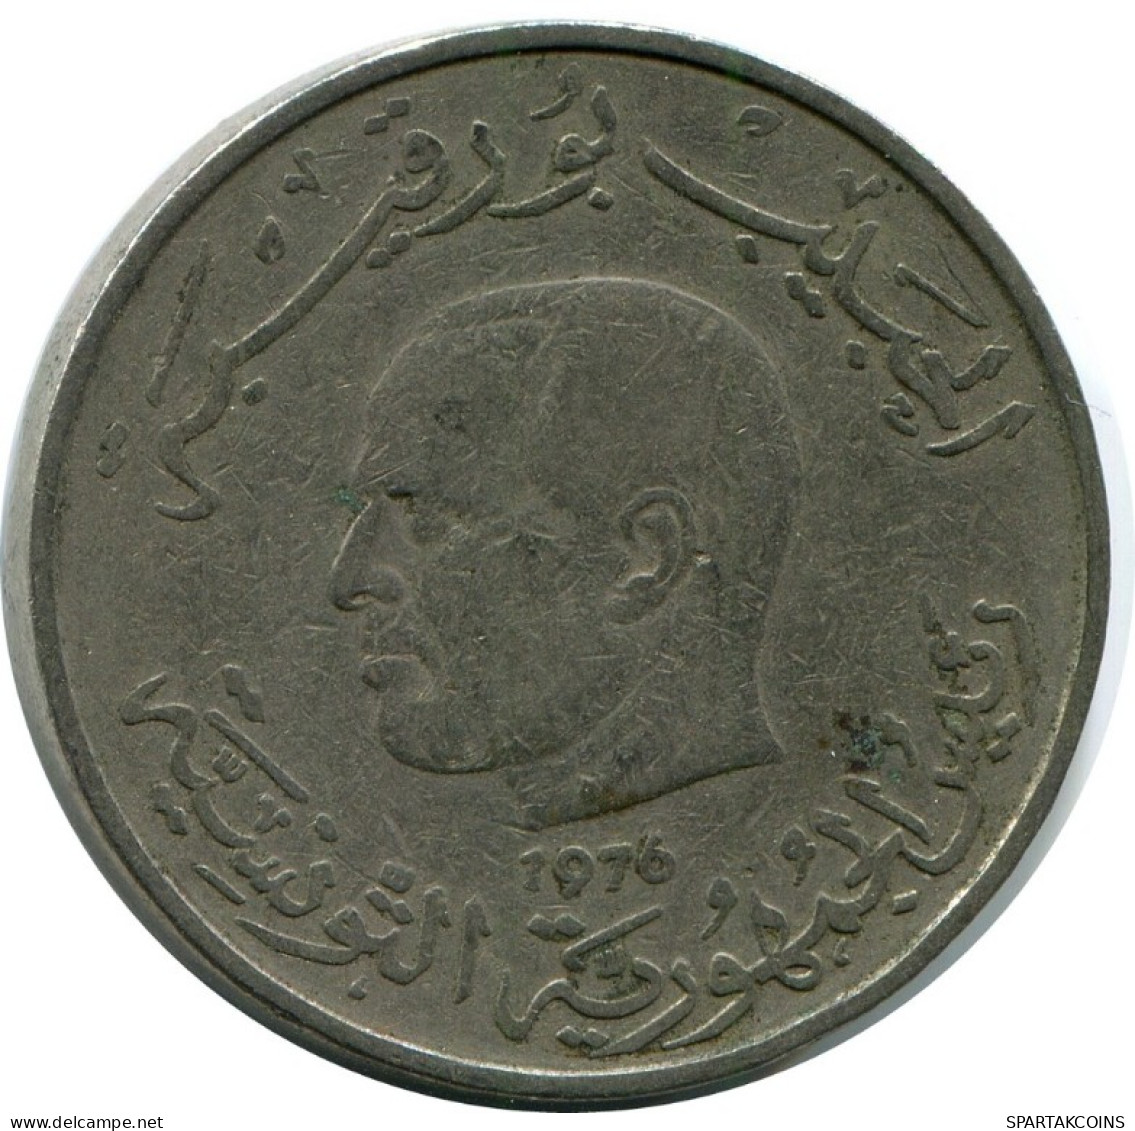 1 DINAR 1976 TUNISIA Coin #AH930.U.A - Tunisie